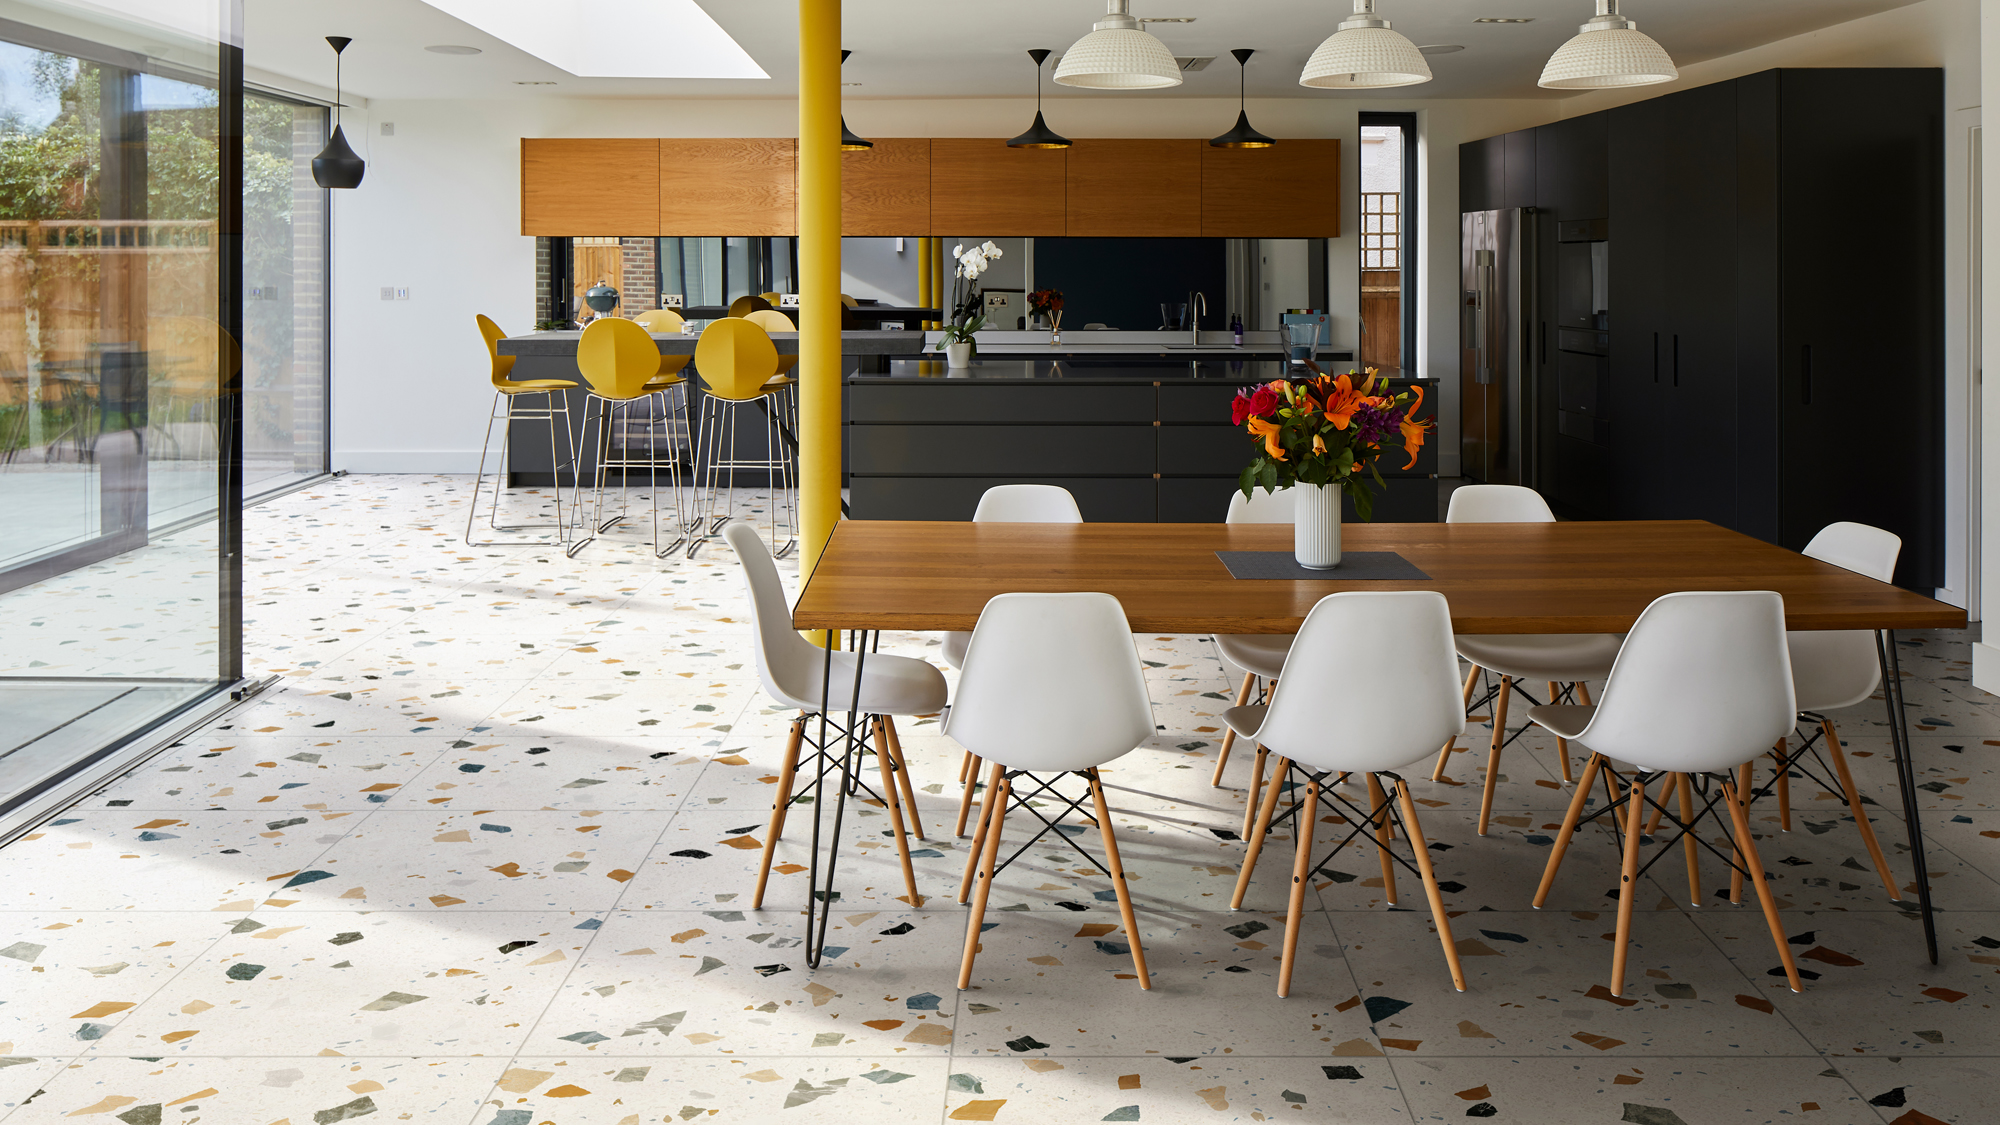 Kitchen Floor Tile Ideas 14 Durable, Floor Tile Colors For Kitchen